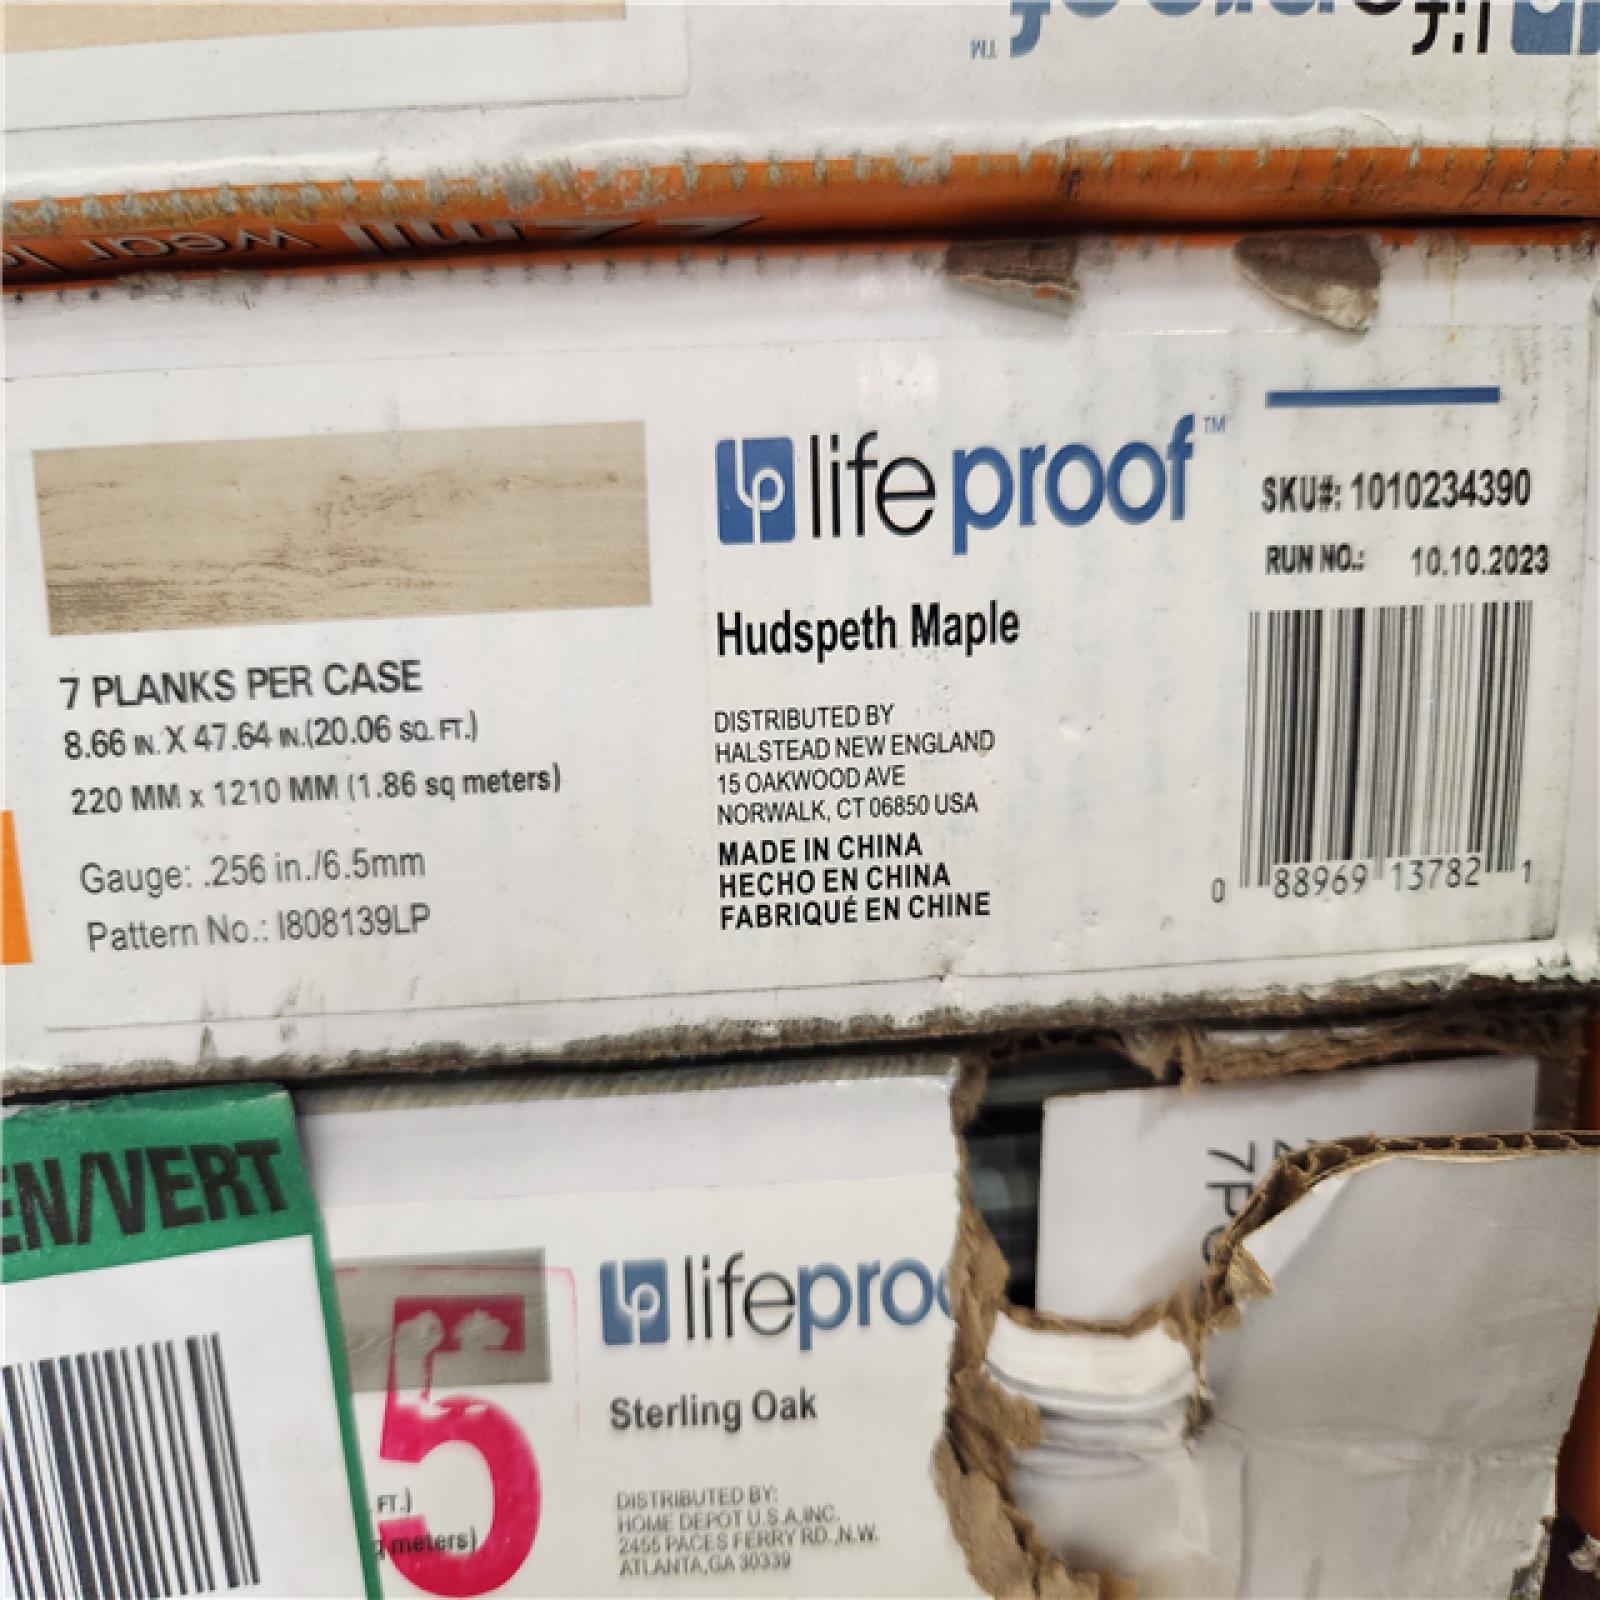 Phoenix Location Pallet of Assorted Lifeproof Vinyl Flooring(34 Cases Total)